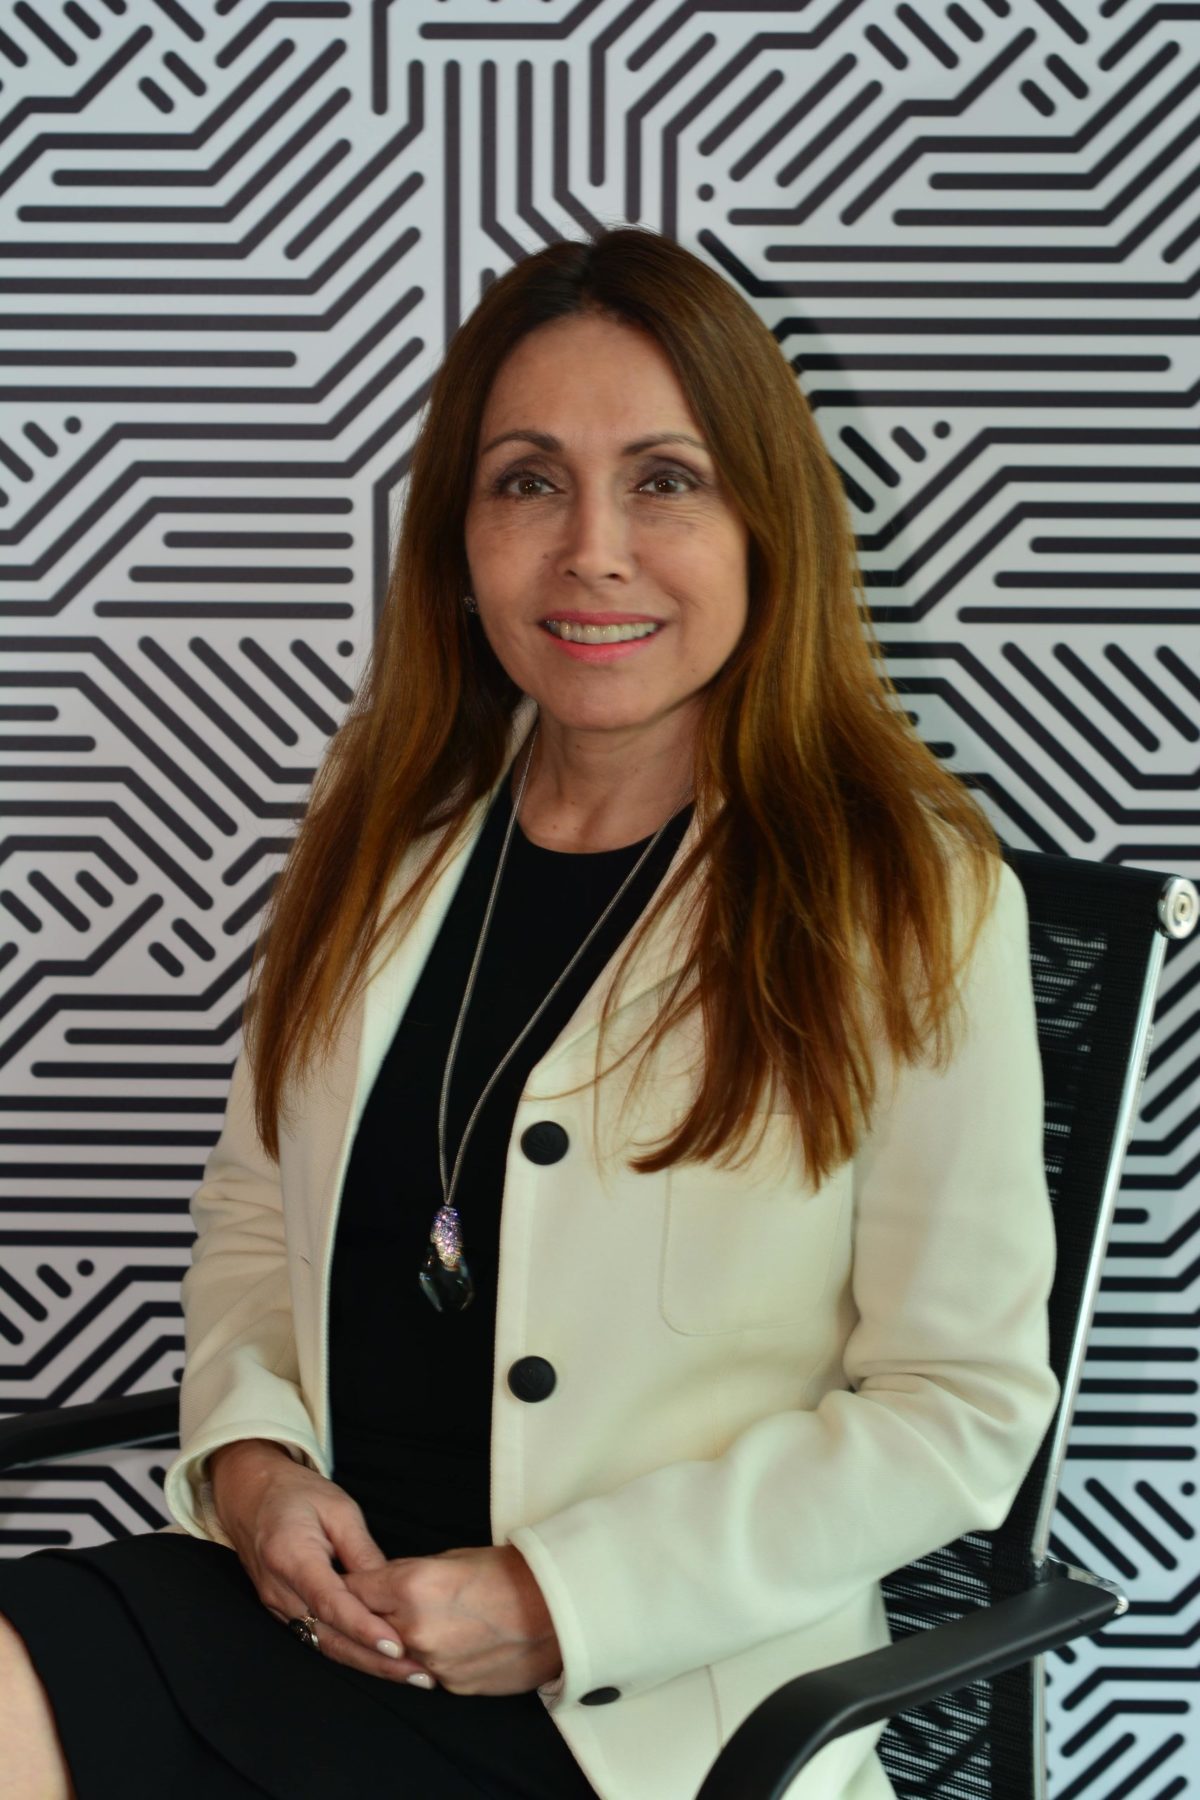 Sandra Orihuela habla sobre la gestión de riesgos para la sostenibilidad en los negocios